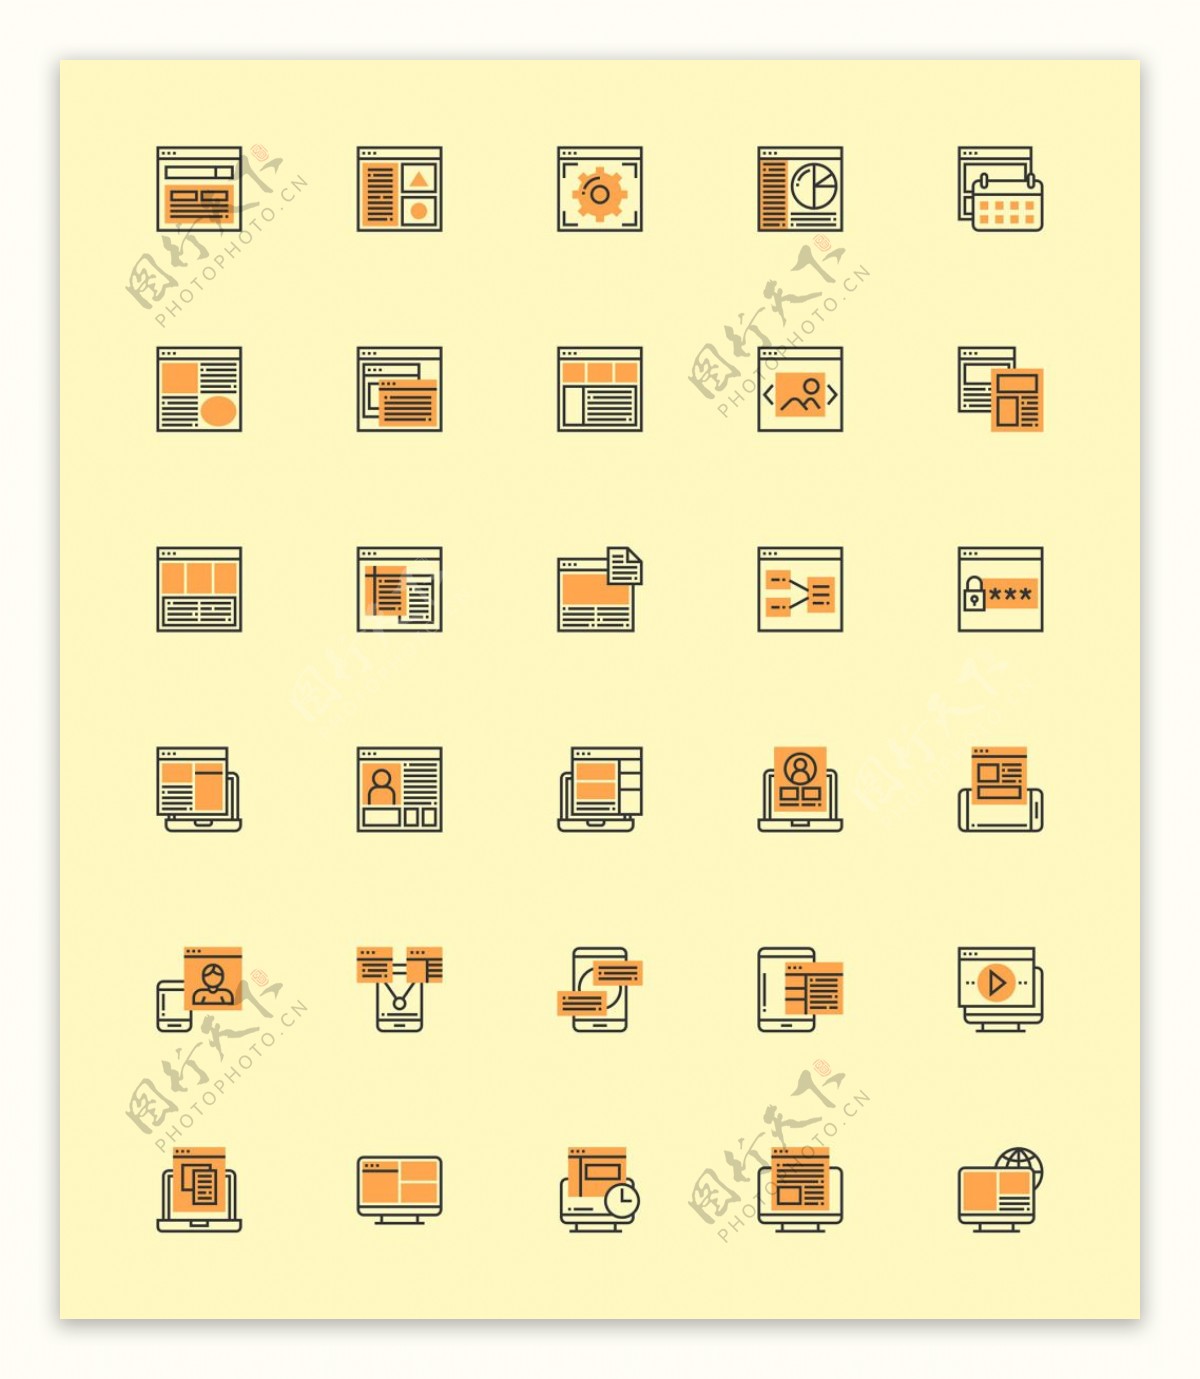 30枚用户界面元素图标sketch素材